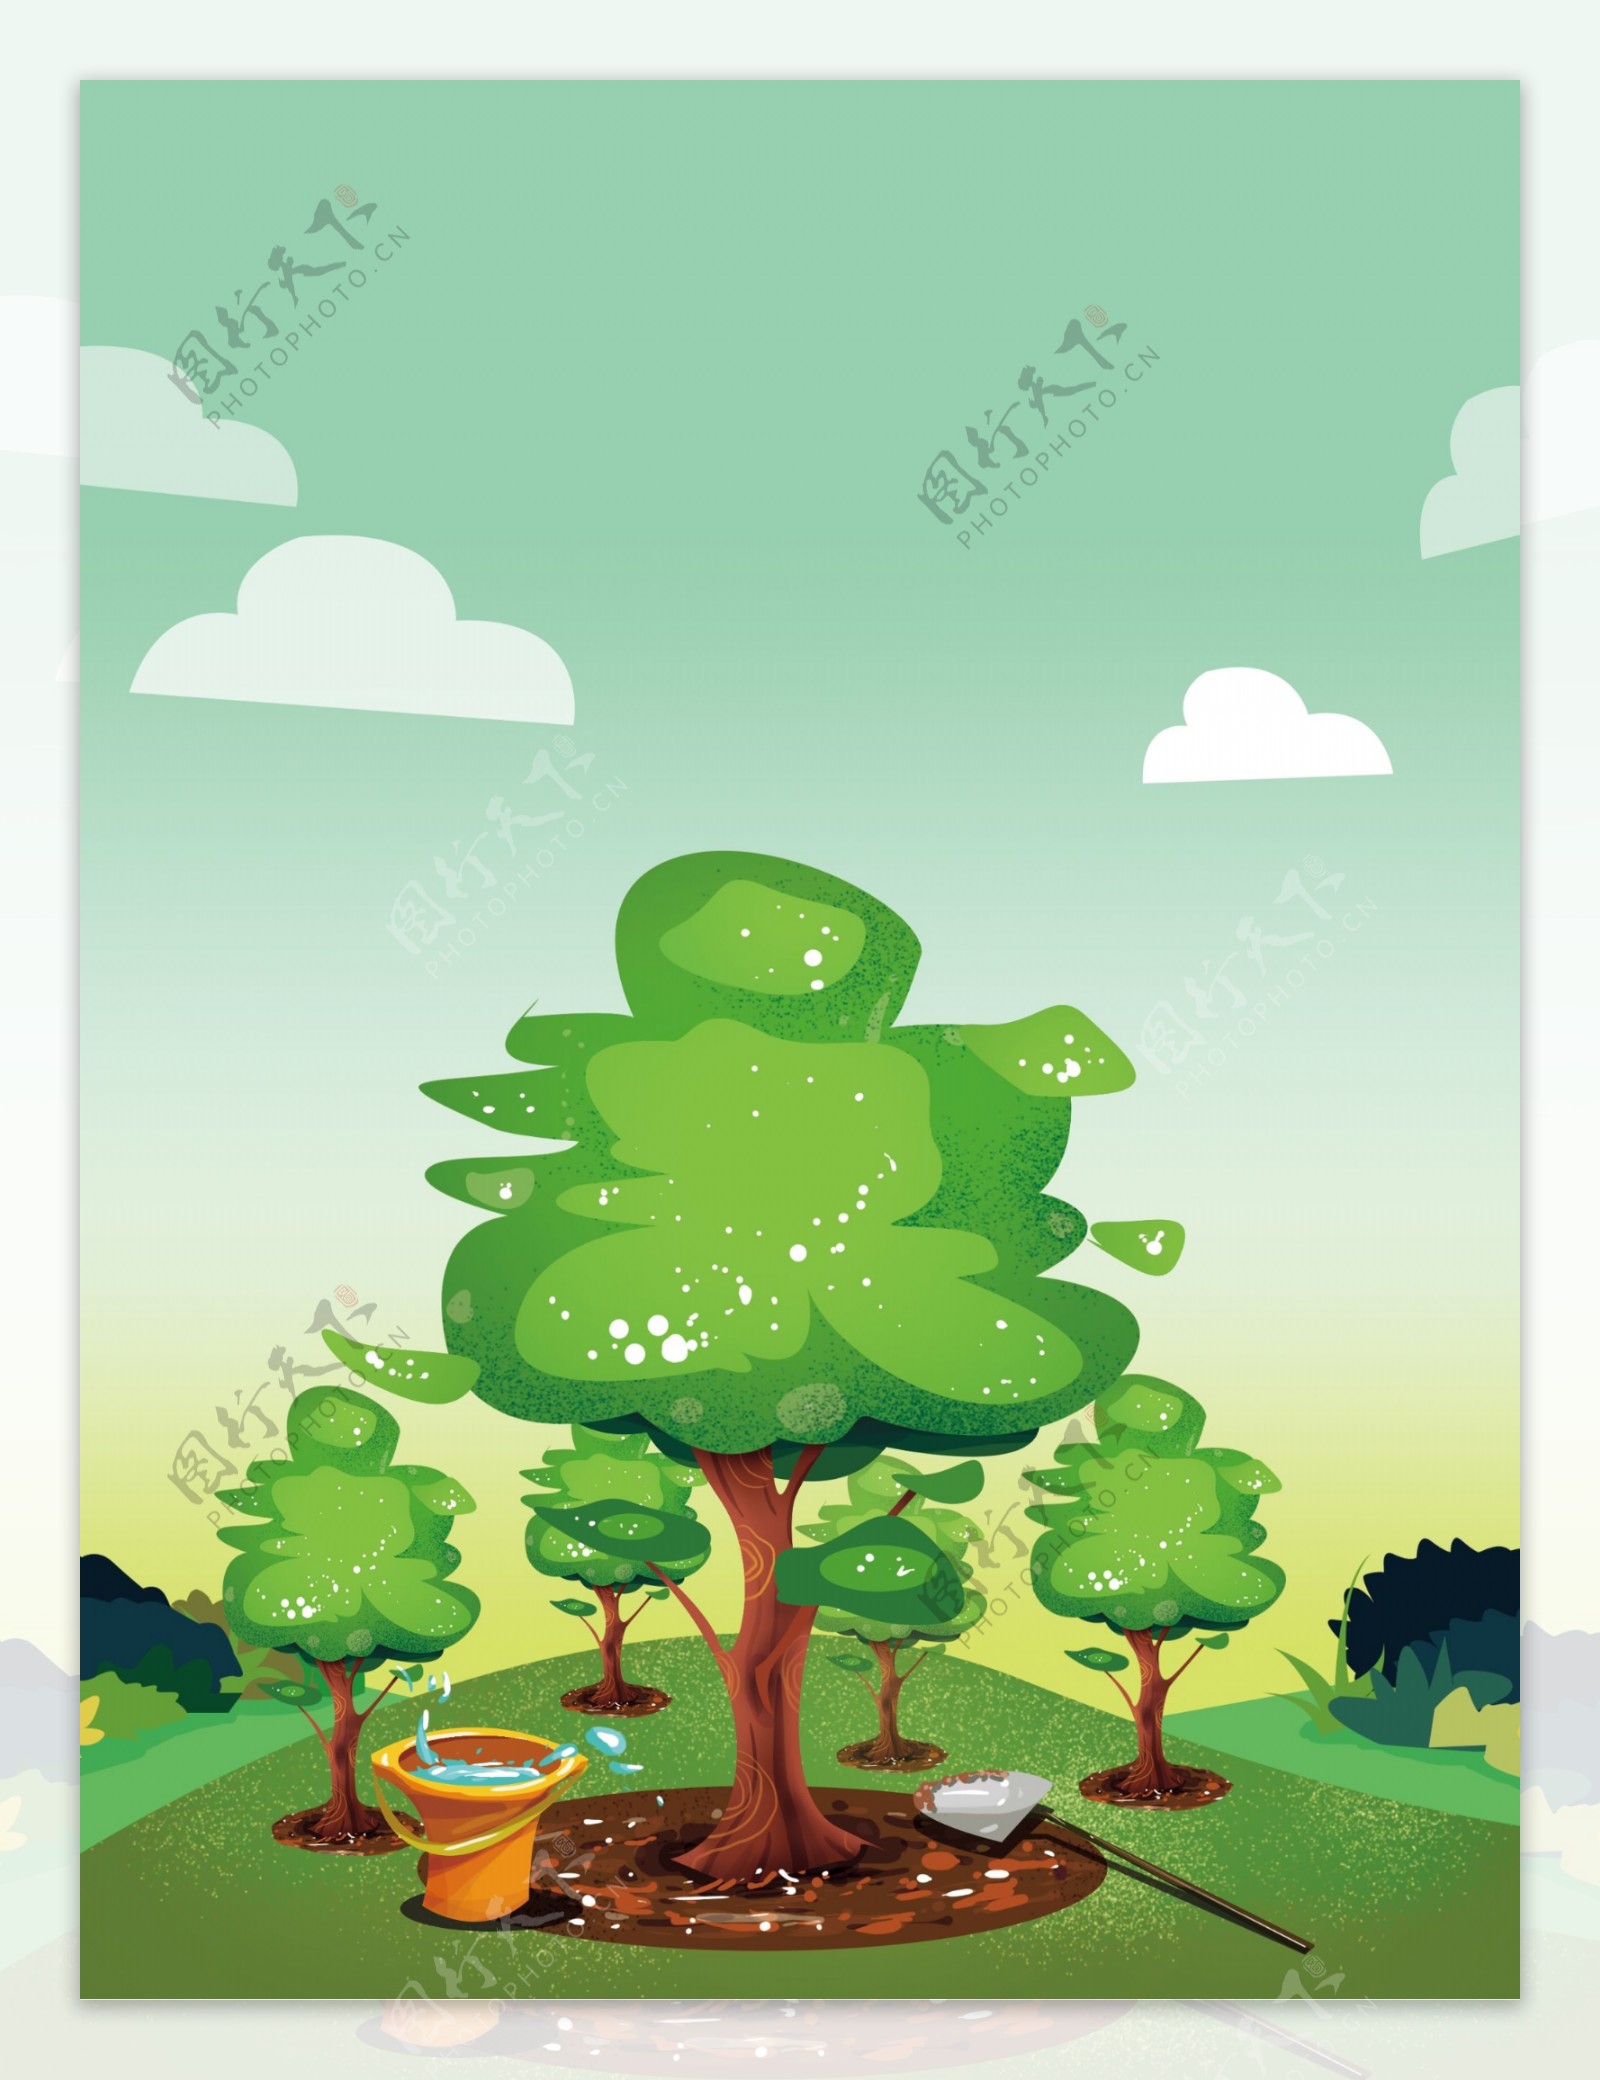 保护环境手绘保护环境种树背景设计